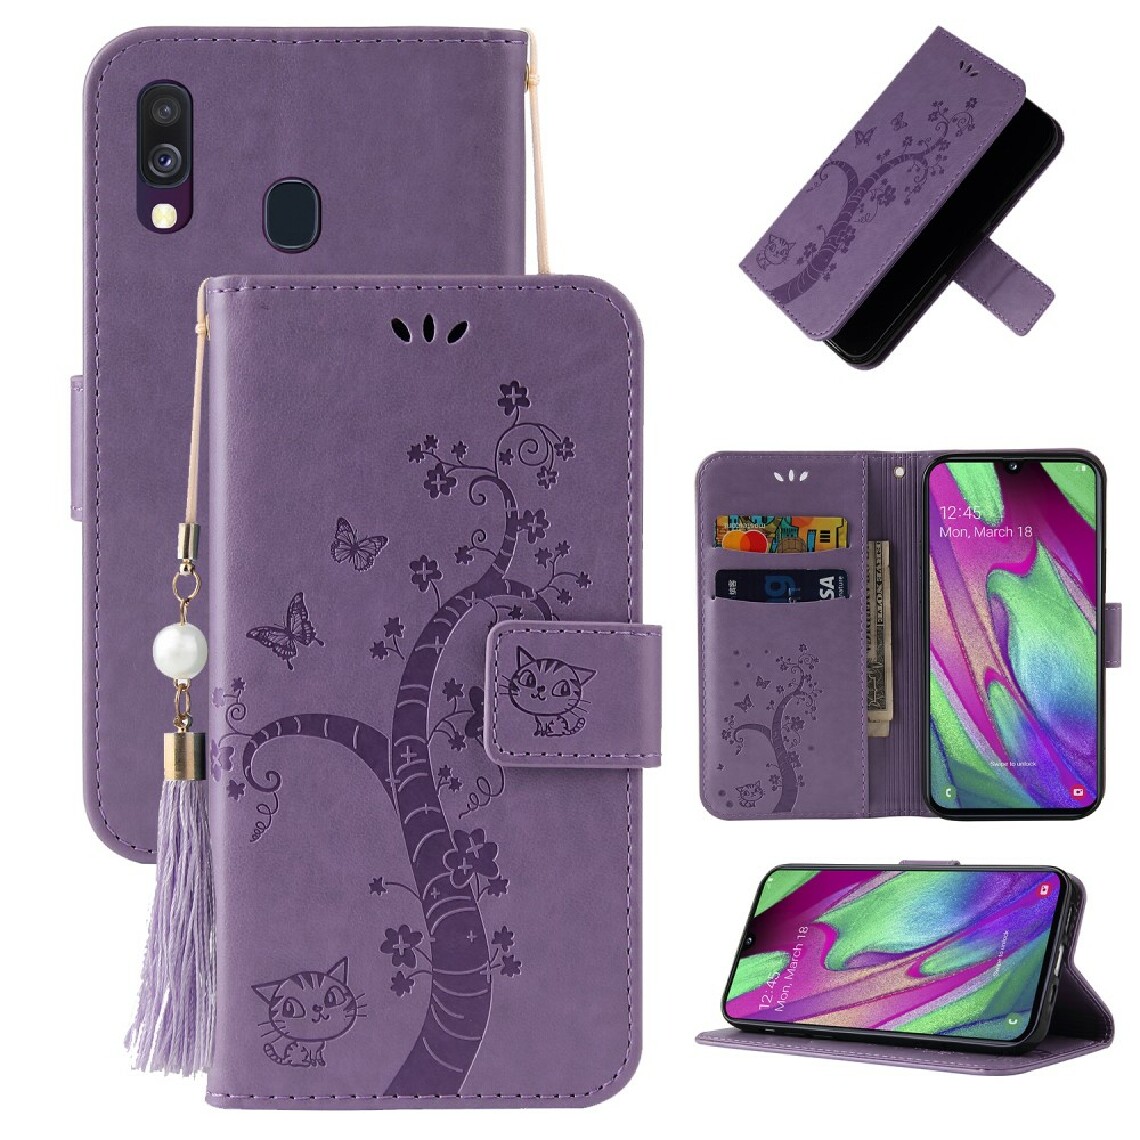 Other - Etui en PU empreinte arbre porte-bonheur violet pour votre Samsung Galaxy A20e - Coque, étui smartphone